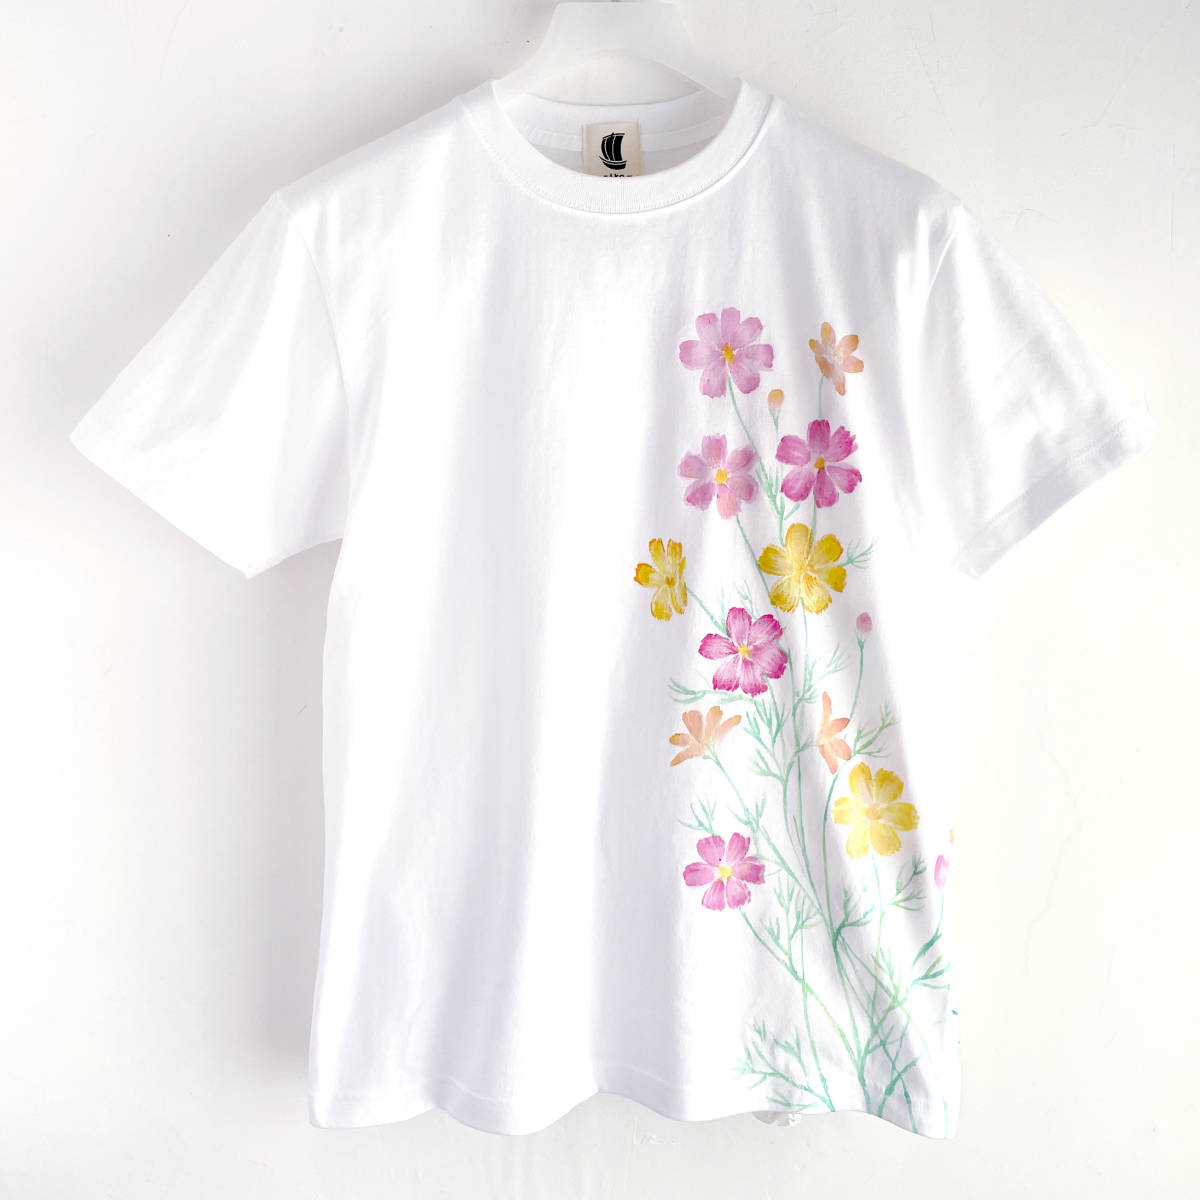 メンズ Tシャツ Lサイズ 白 コスモス柄Tシャツ ホワイト ハンドメイド 手描きTシャツ 秋桜